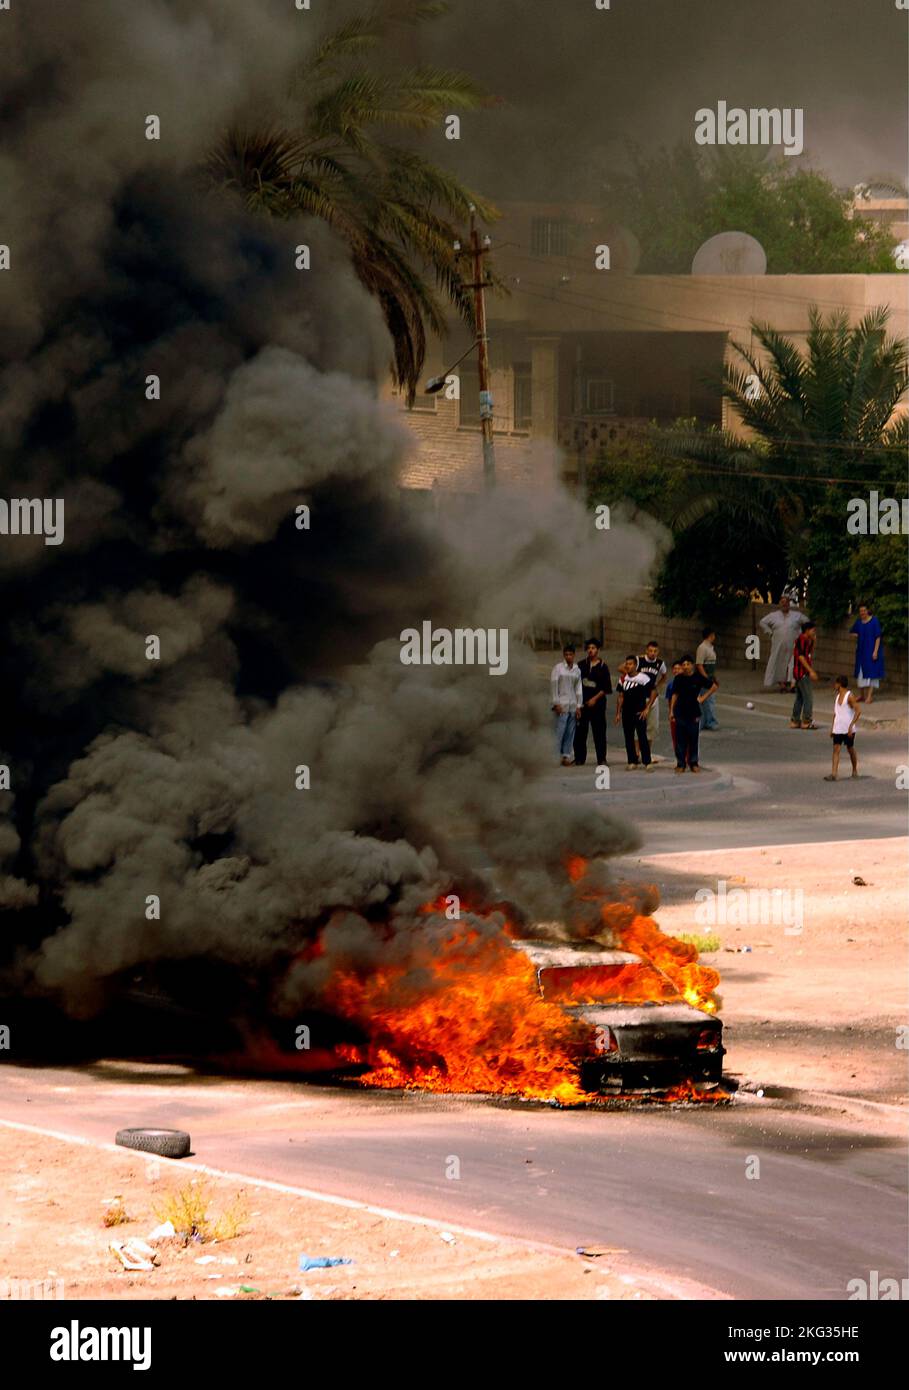 BAGDAD, IRAK - 08. August 2006 - ein irakisches Fahrzeug brennt in Bagdad, Irak, nachdem es von einem Mörser getroffen wurde, der von Aufständischen abgefeuert wurde - Foto: Geopix/US N Stockfoto